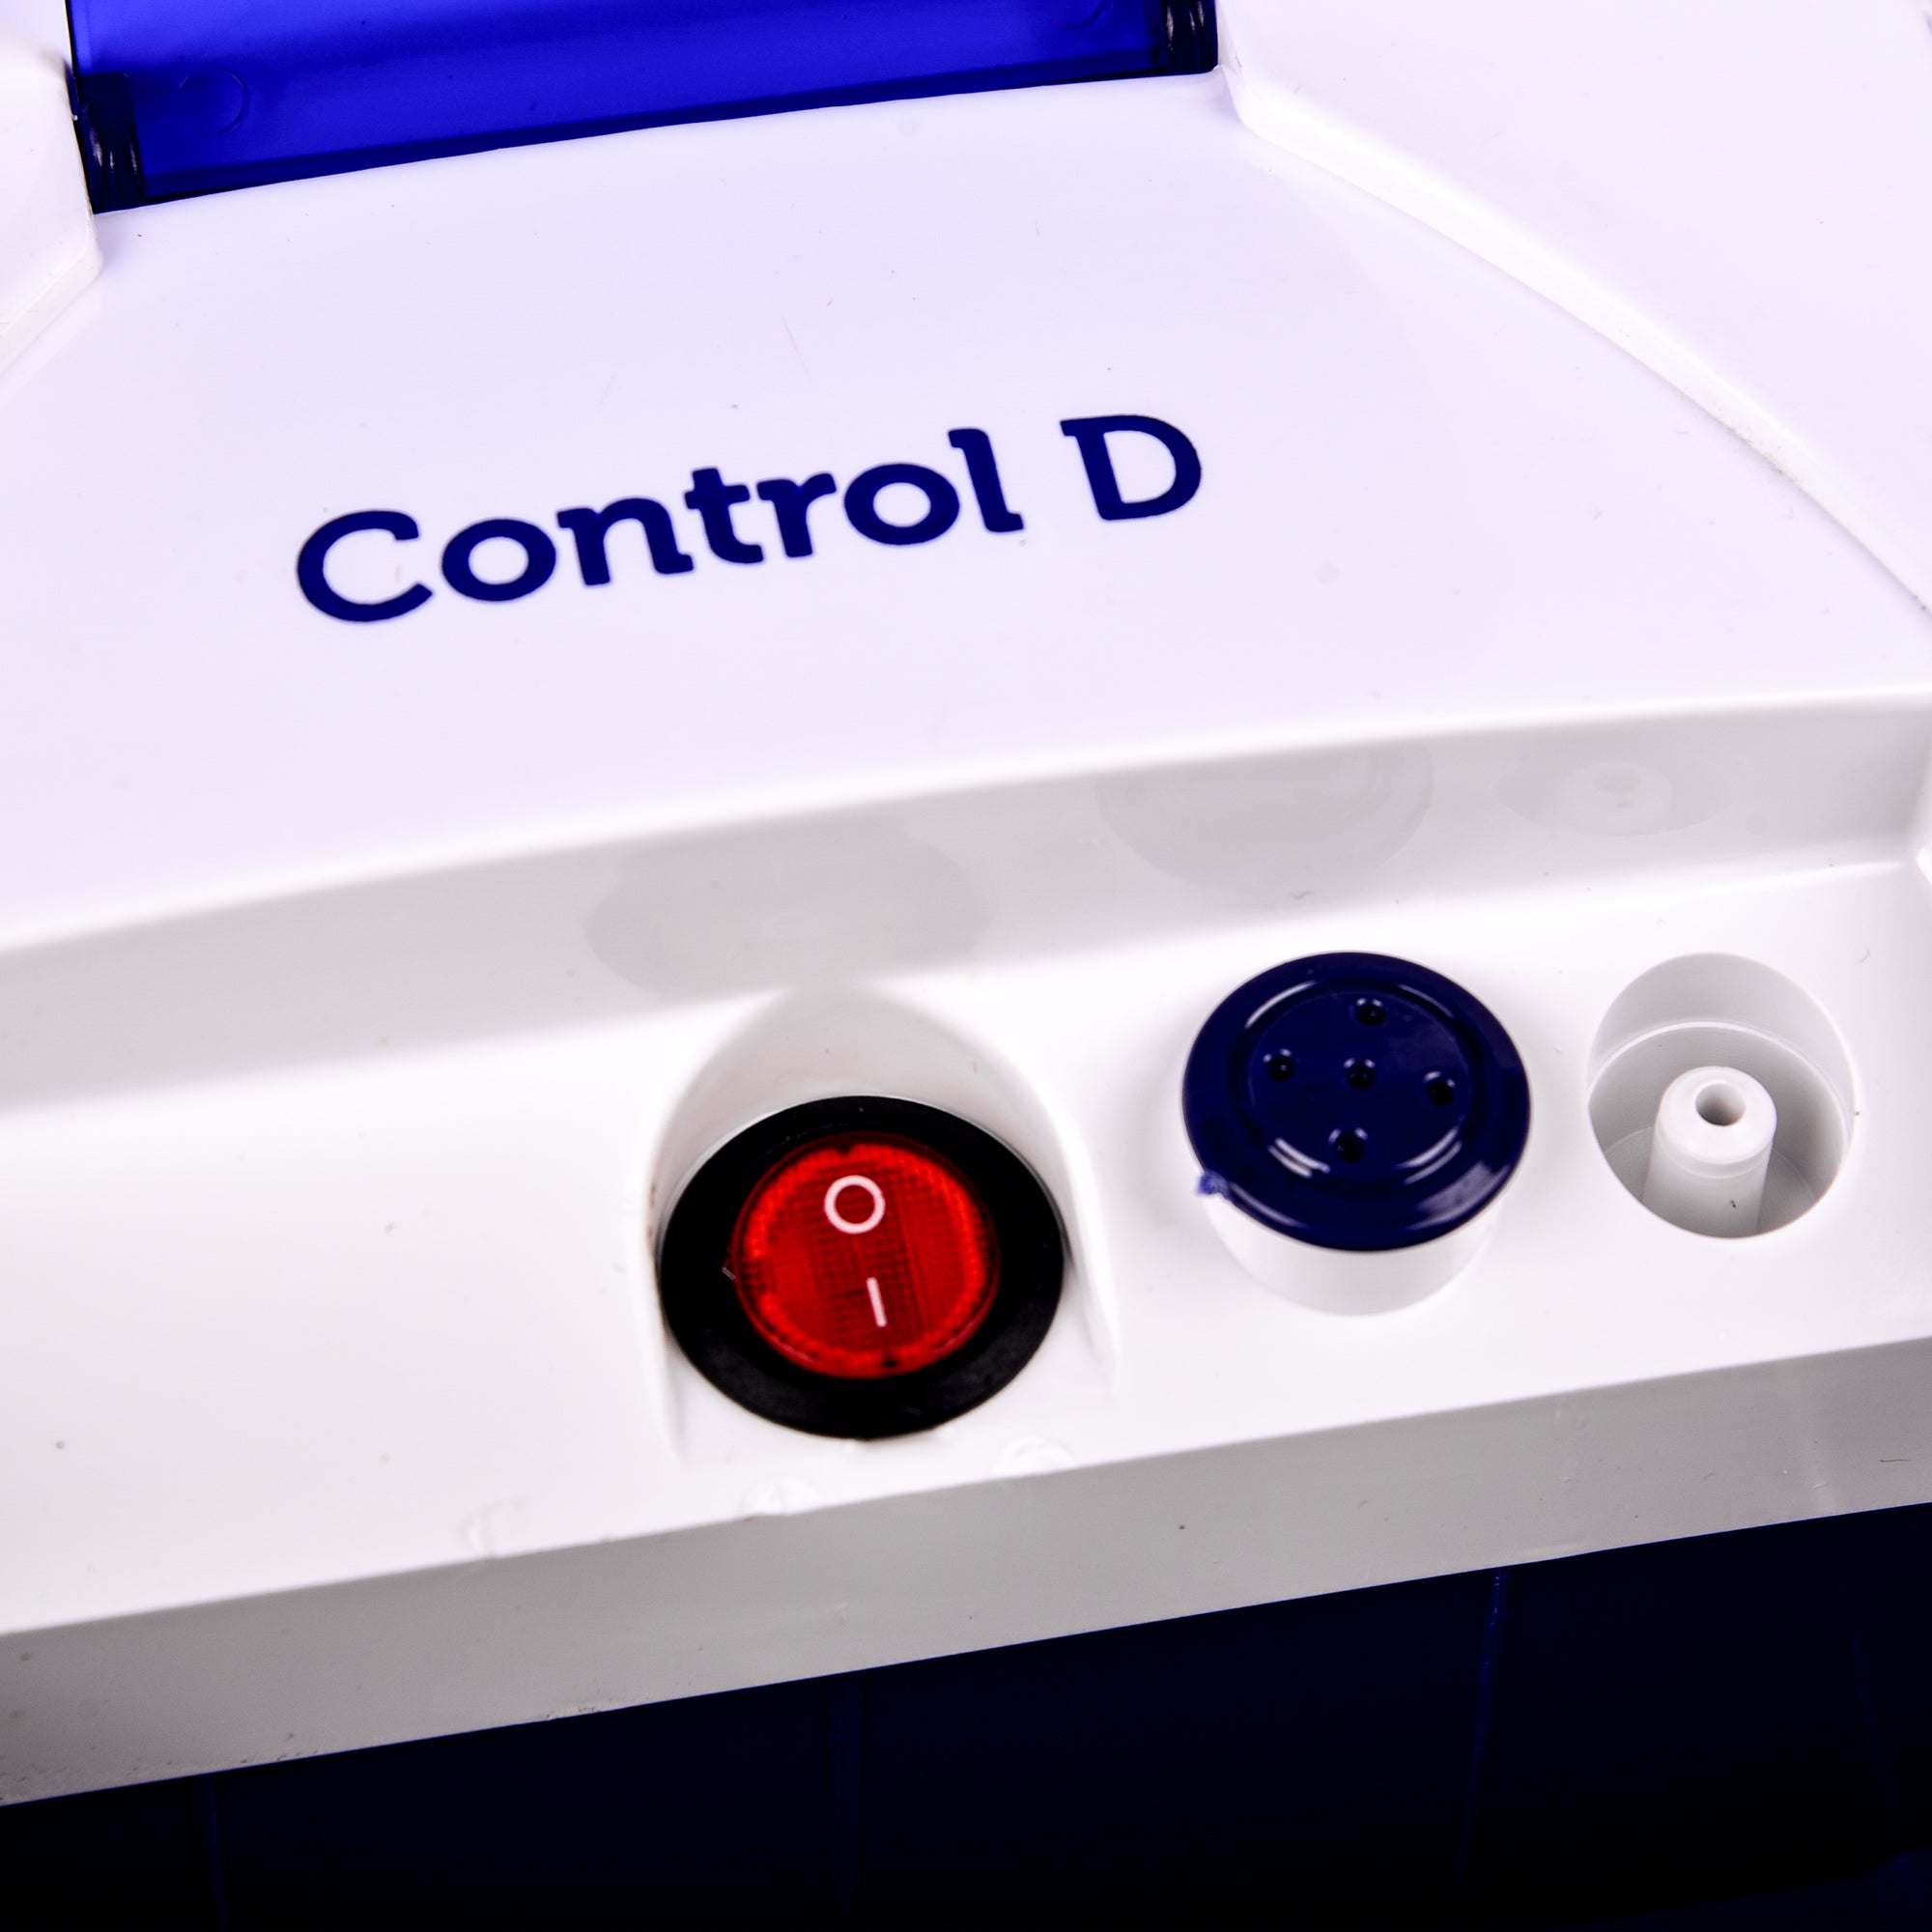 Control D Premium Nebulizer